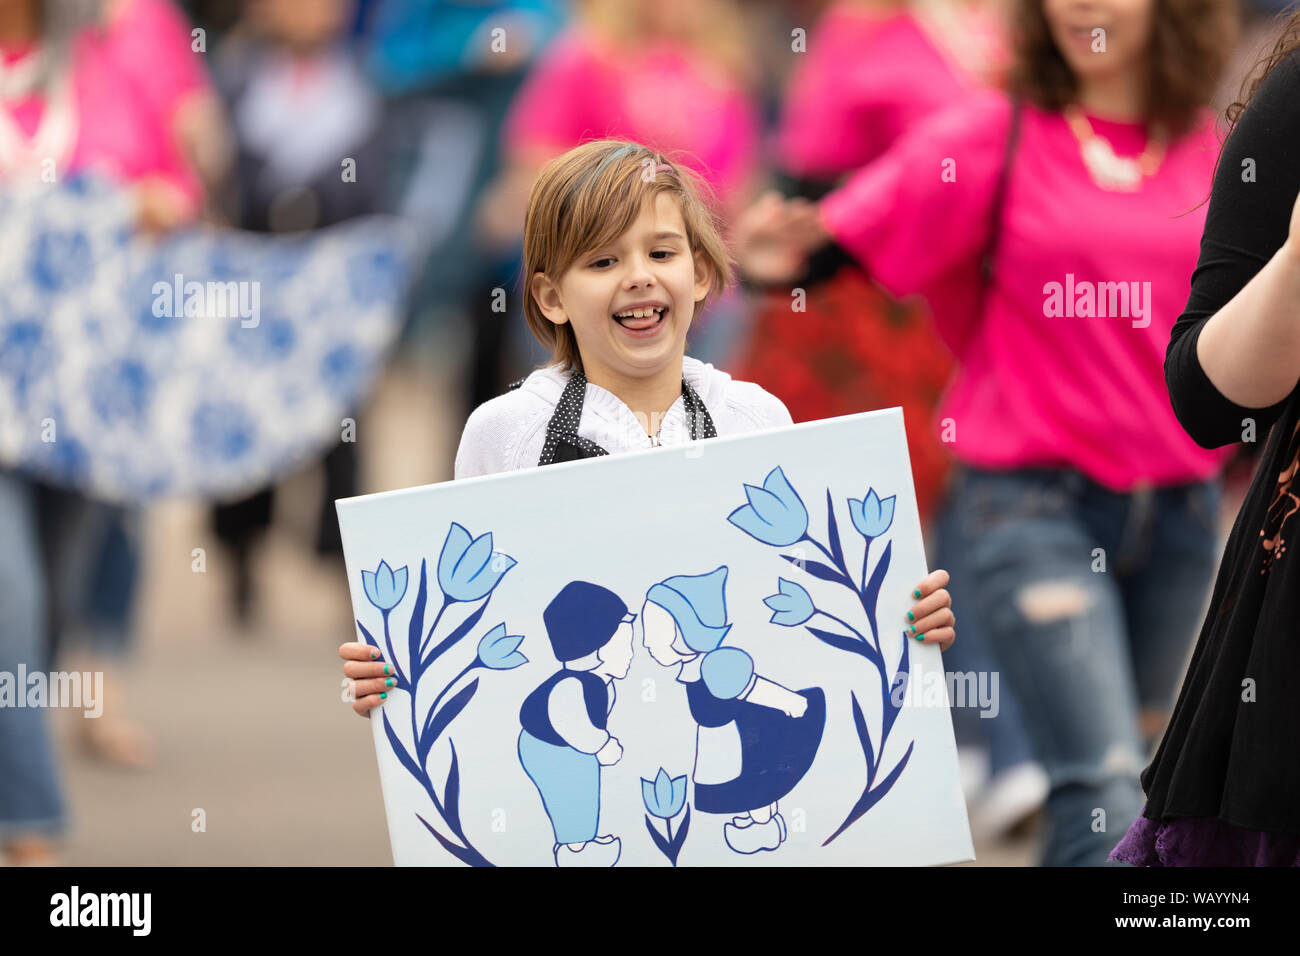 Holland, Michigan, États-Unis - 11 mai 2019 : Le Temps des tulipes Parade, femme l'accompagnement des enfants afficher leurs œuvres connexes néerlandais pendant la parade Banque D'Images